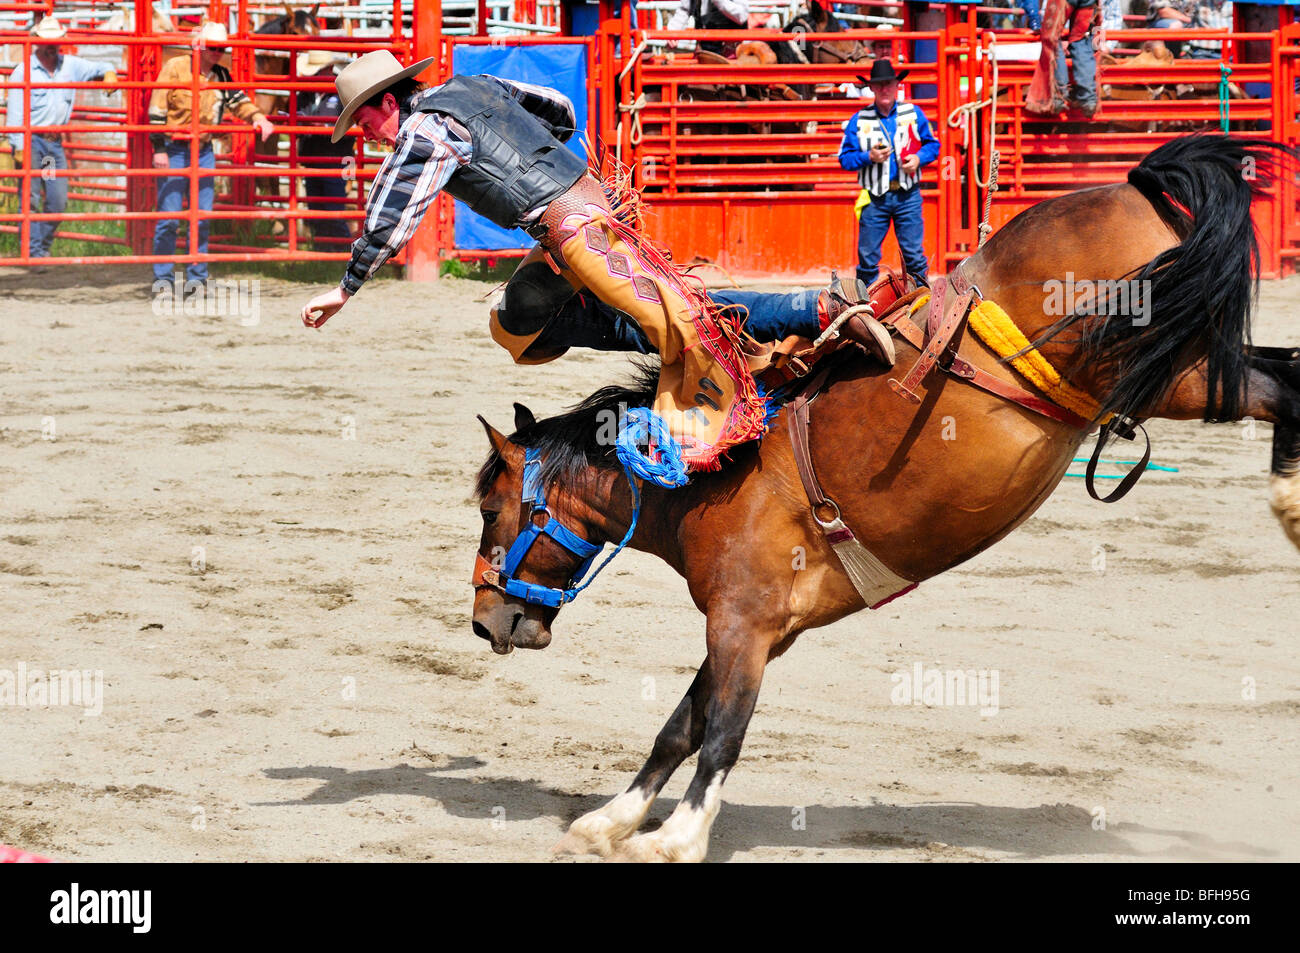 Cowboy étant projeté de sa selle ride pendant bronc riding au Luxton Pro Rodeo à Victoria, BC. Banque D'Images